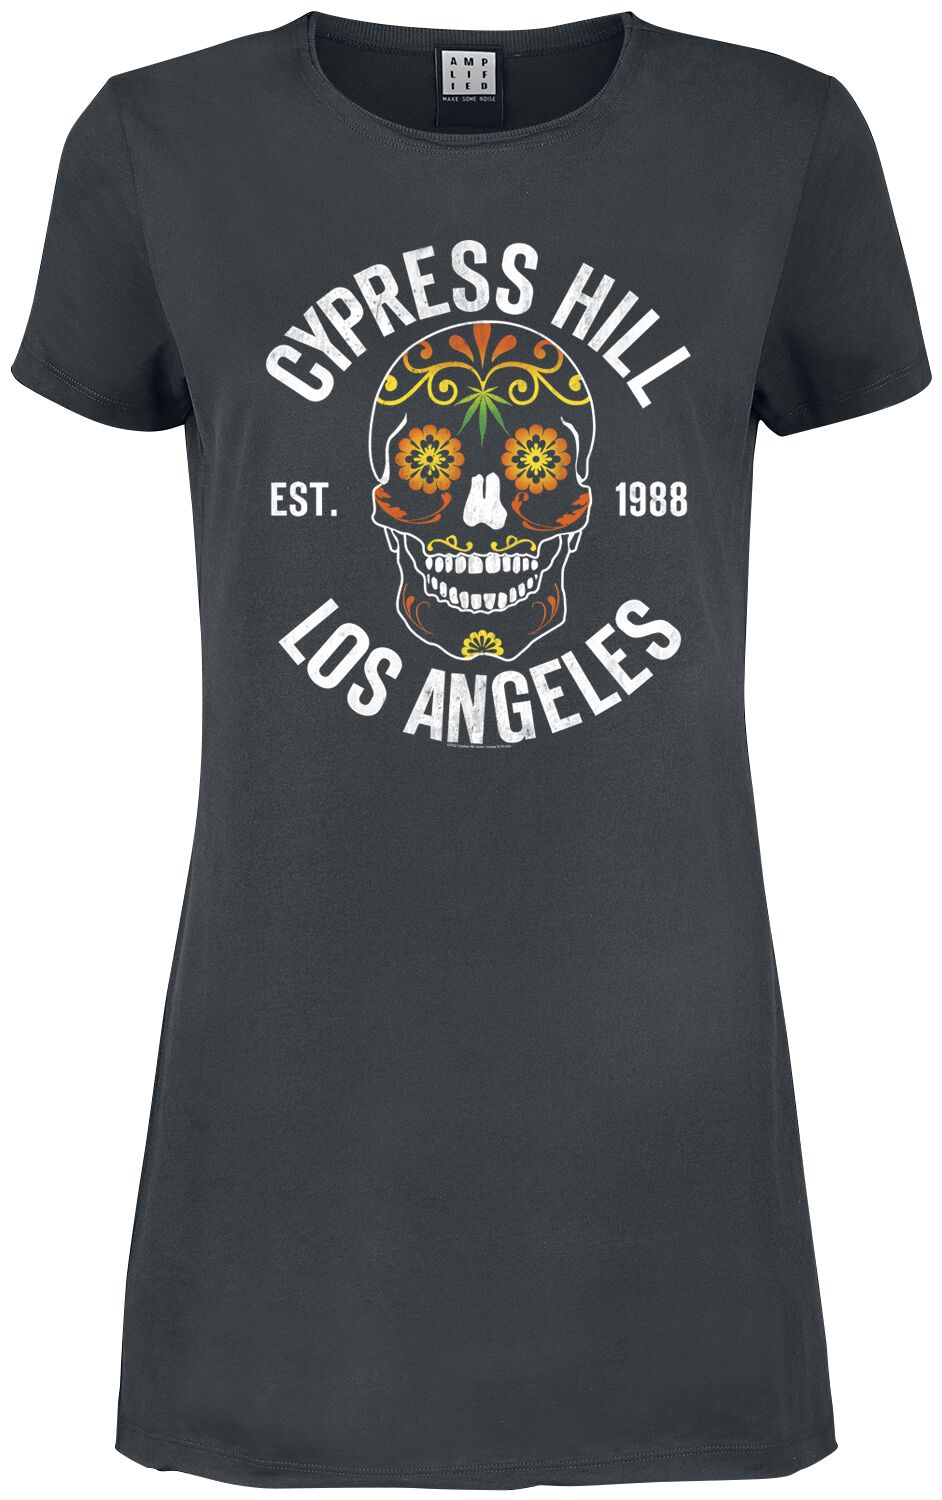 Cypress Hill Kurzes Kleid - Amplified Collection - Floral Skull - XS bis XXL - für Damen - Größe XXL - charcoal  - Lizenziertes Merchandise!